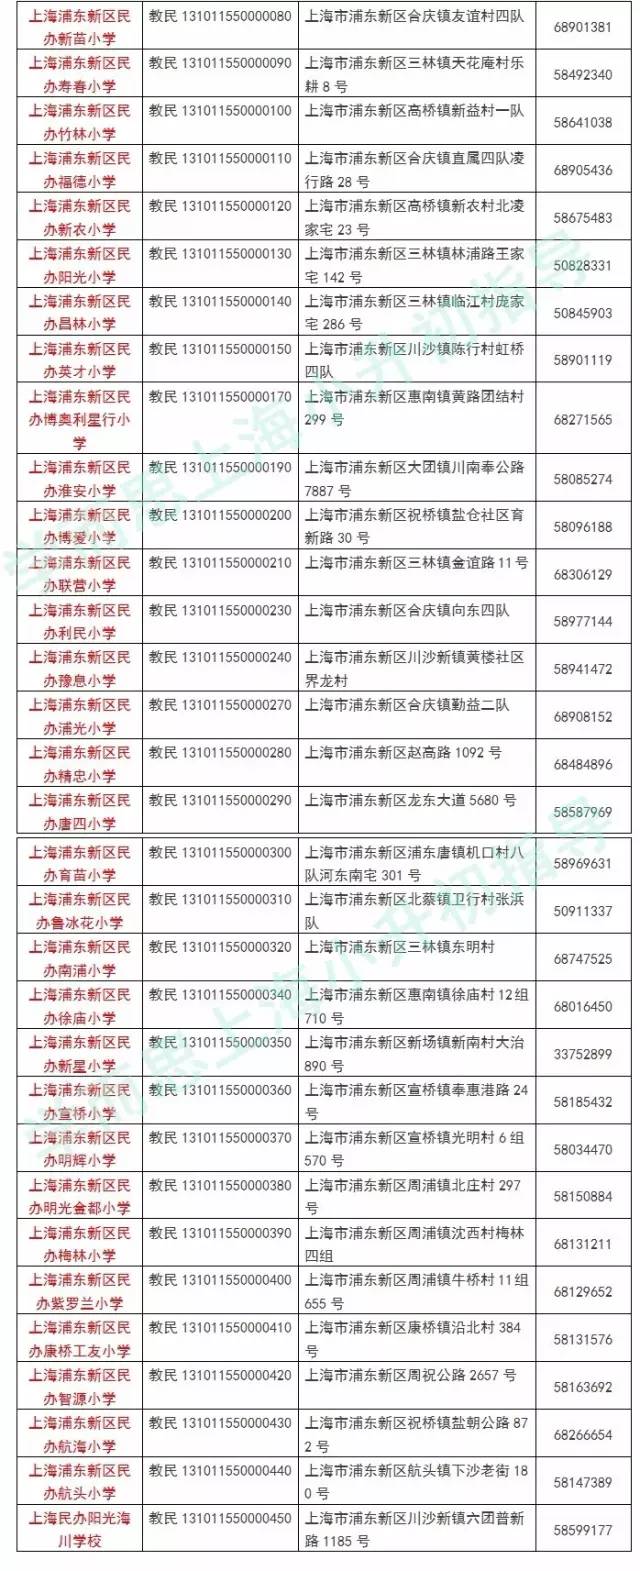 2017上海小学之浦东新区正规民办中小学名单